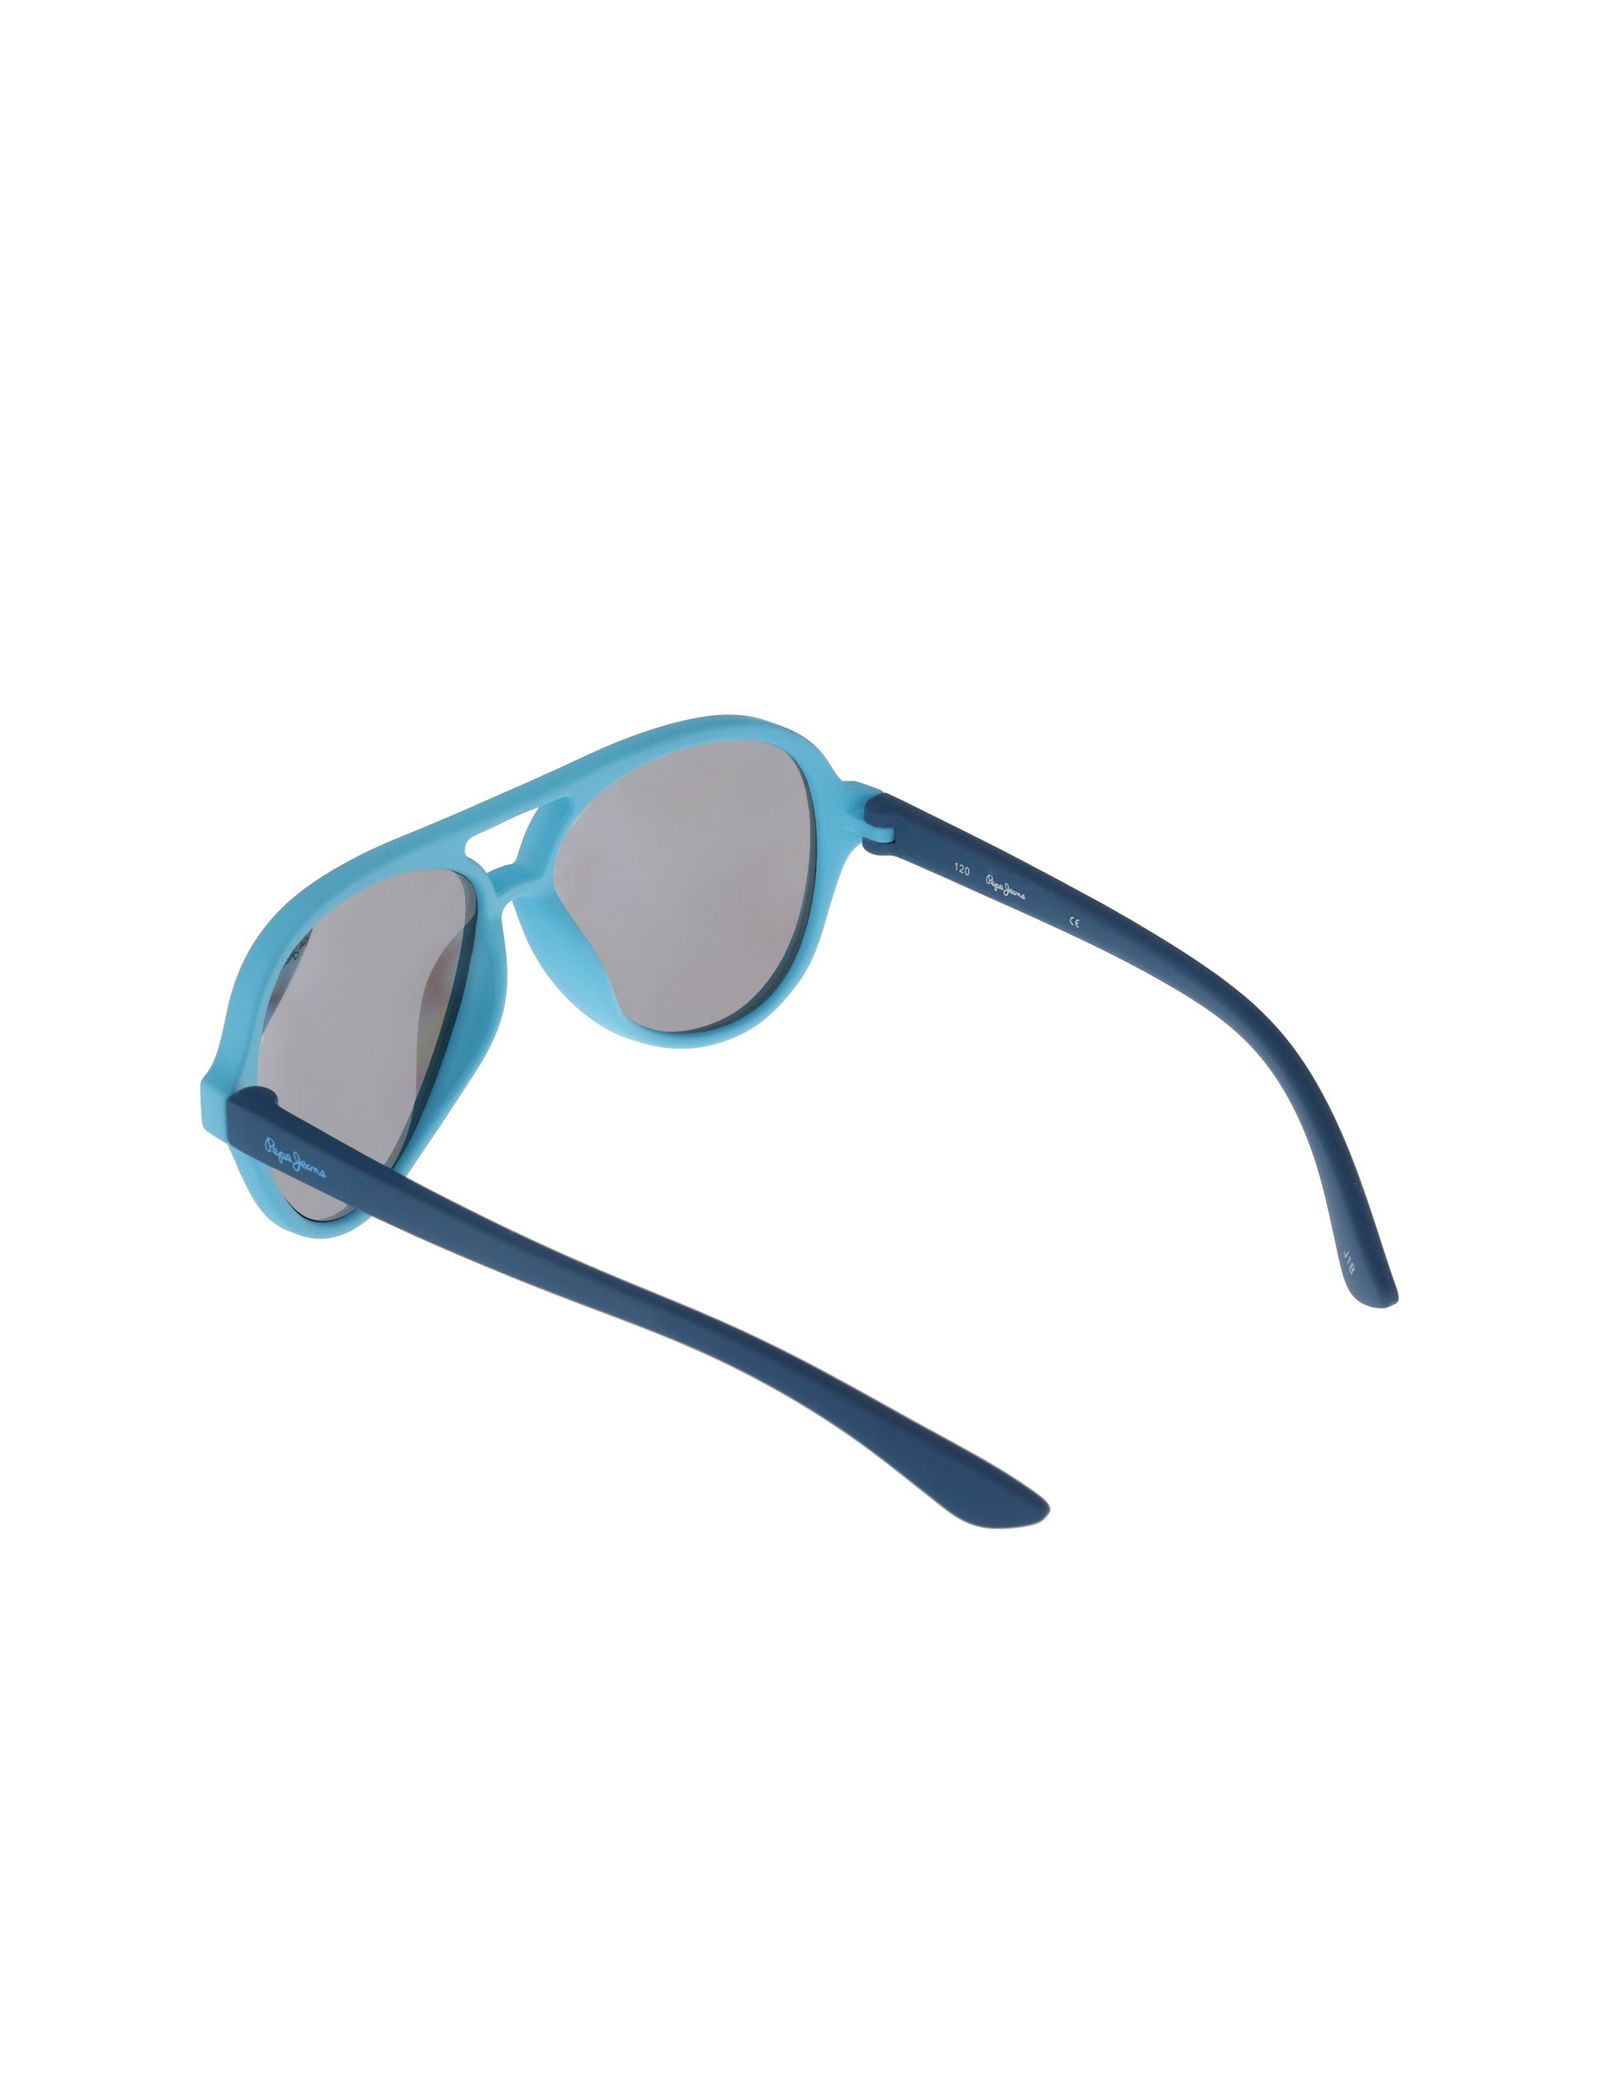 عینک آفتابی خلبانی بچگانه - پپه جینز - آبي روشن - 5